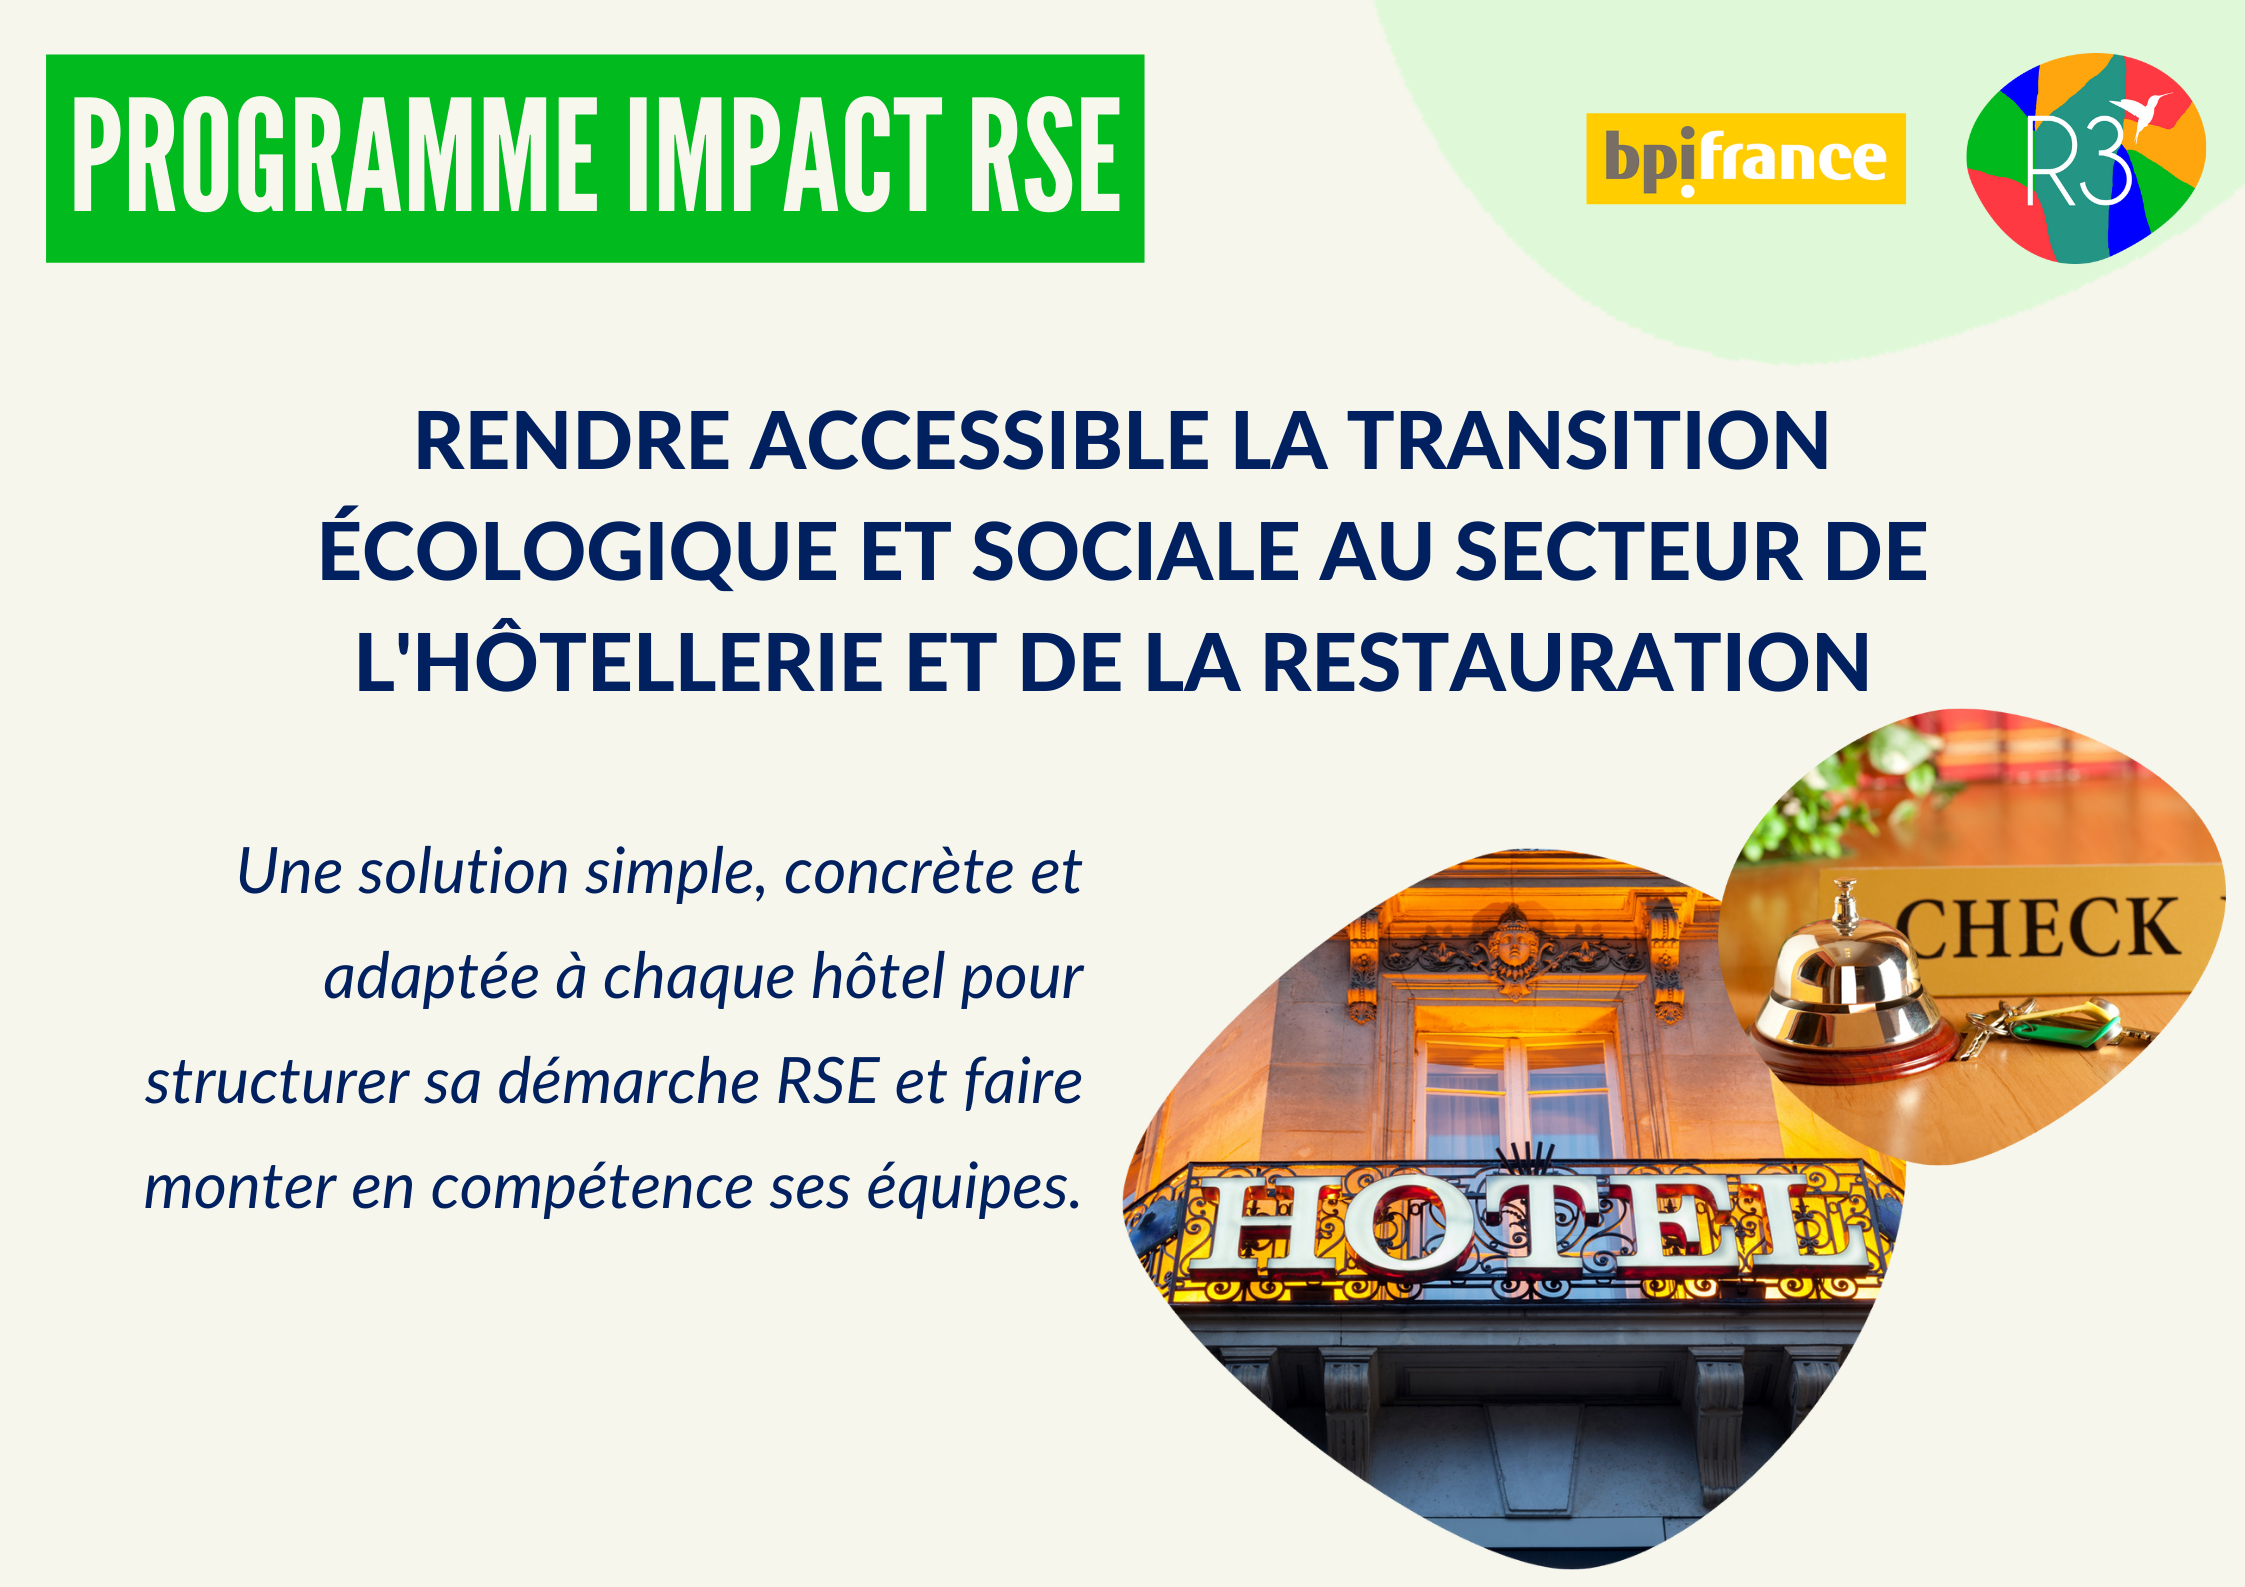 image ressource : Programme Impact RSE – Hôtellerie et Restauration